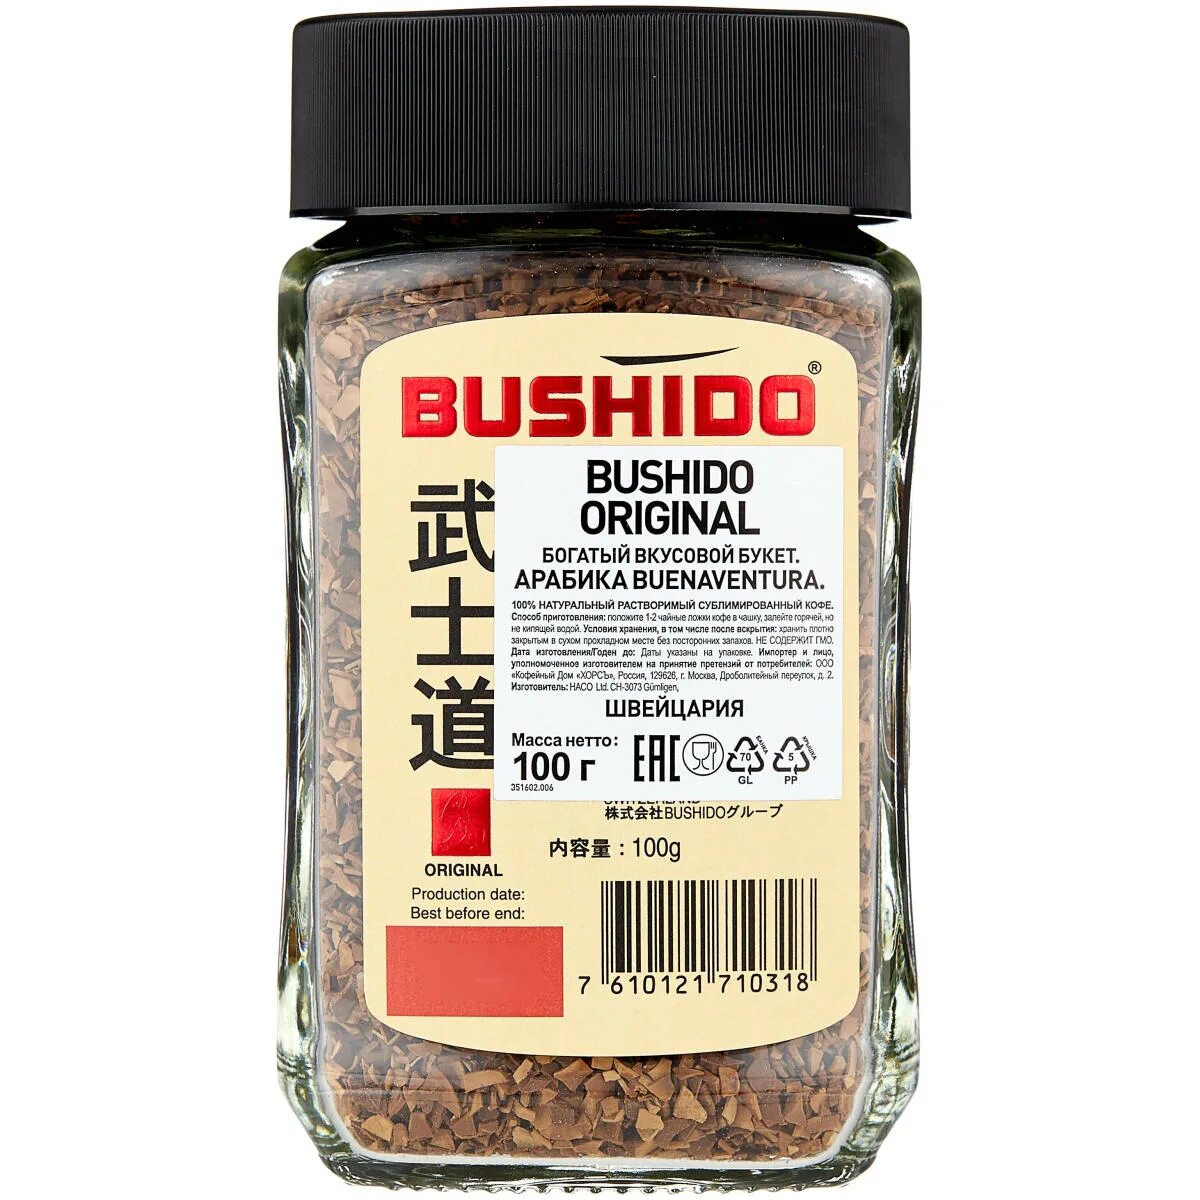 Bushido кофе. Кофе растворимый Bushido Original 100г. Штрих код кофе Бушидо.